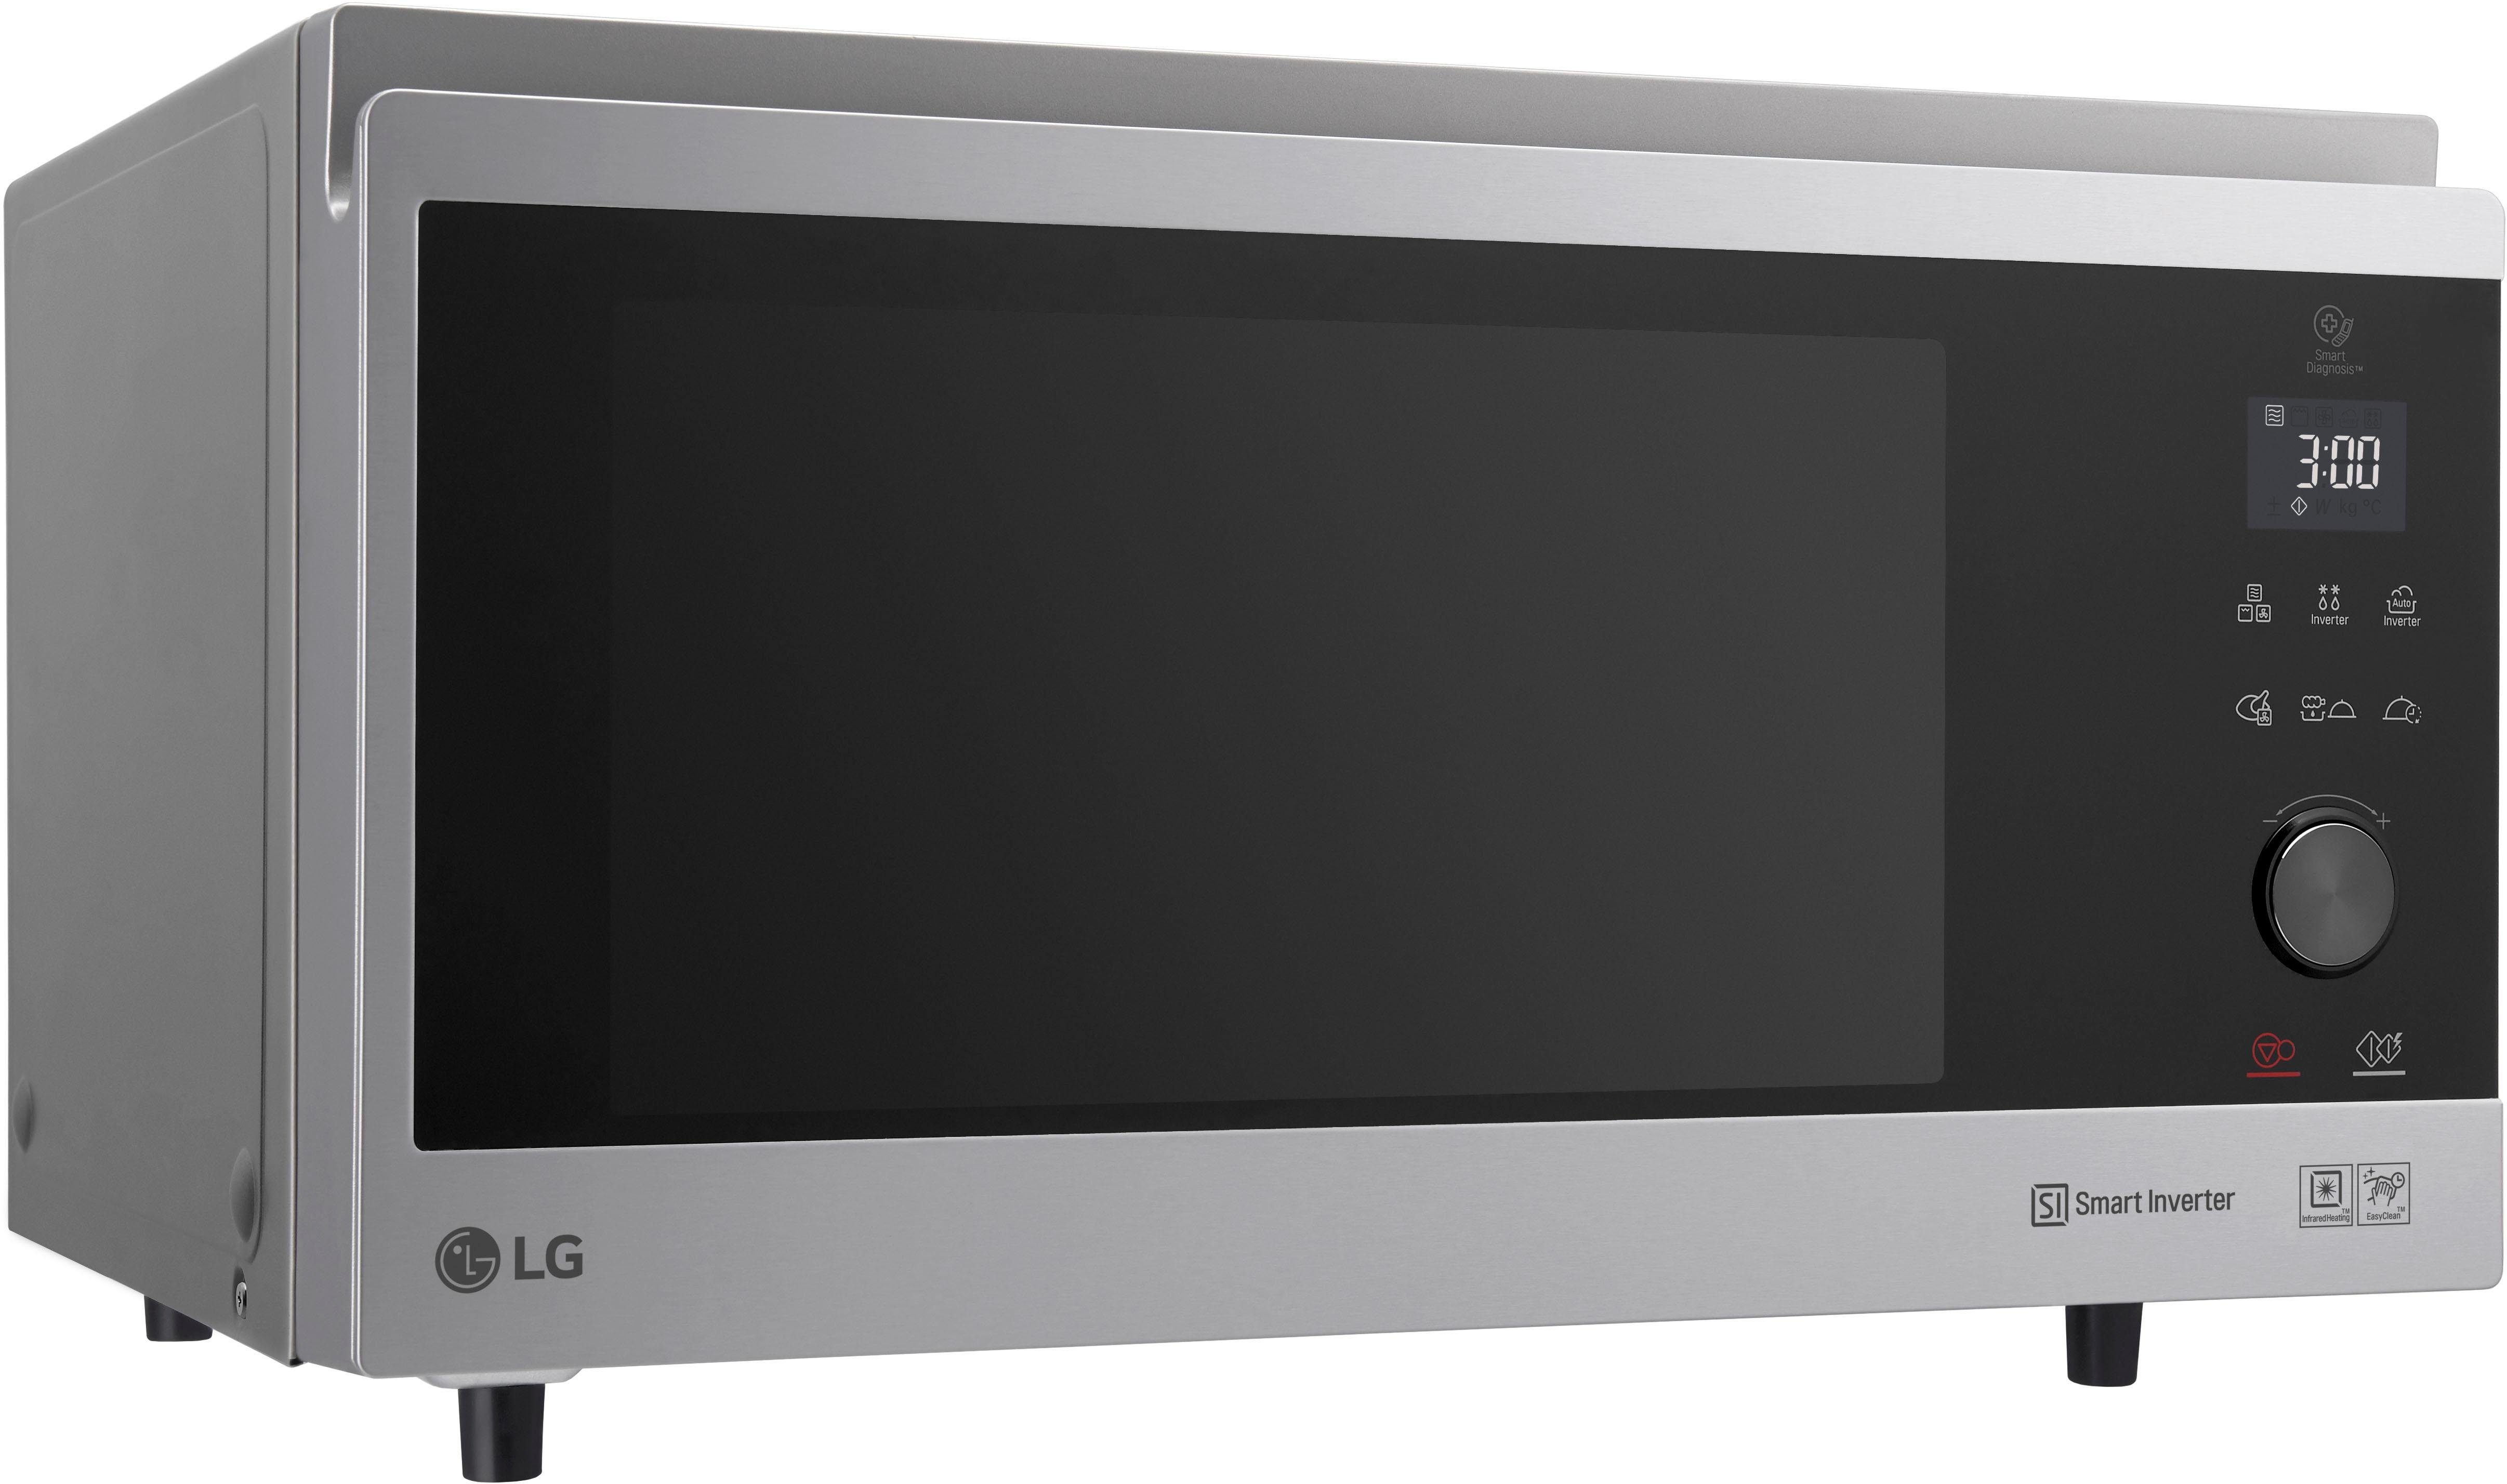 LG 4-in-1 Mikrowelle MJ l, Hybrid-Heißluftofen Heißluft, Grill, ACS, Watt, 1100 3965 Mikrowelle, 39